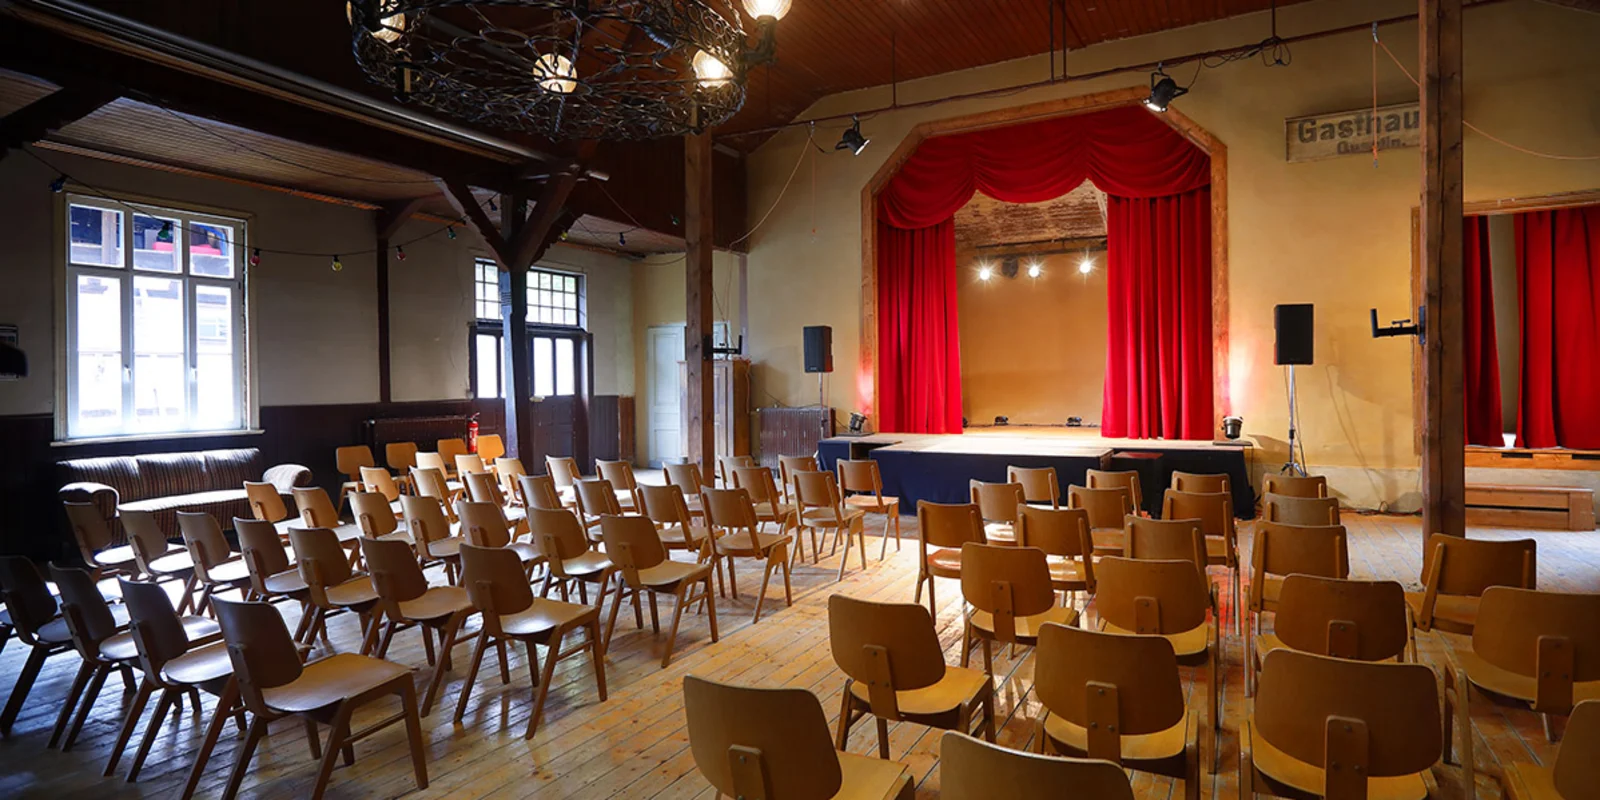 Das Studio Klawunn von Innen: eine Bühne mit rotem Vorhang, davor mehrere Reihen mit Holzstühlen. Im Hintergrund eine Empore aus dunklem Holz.